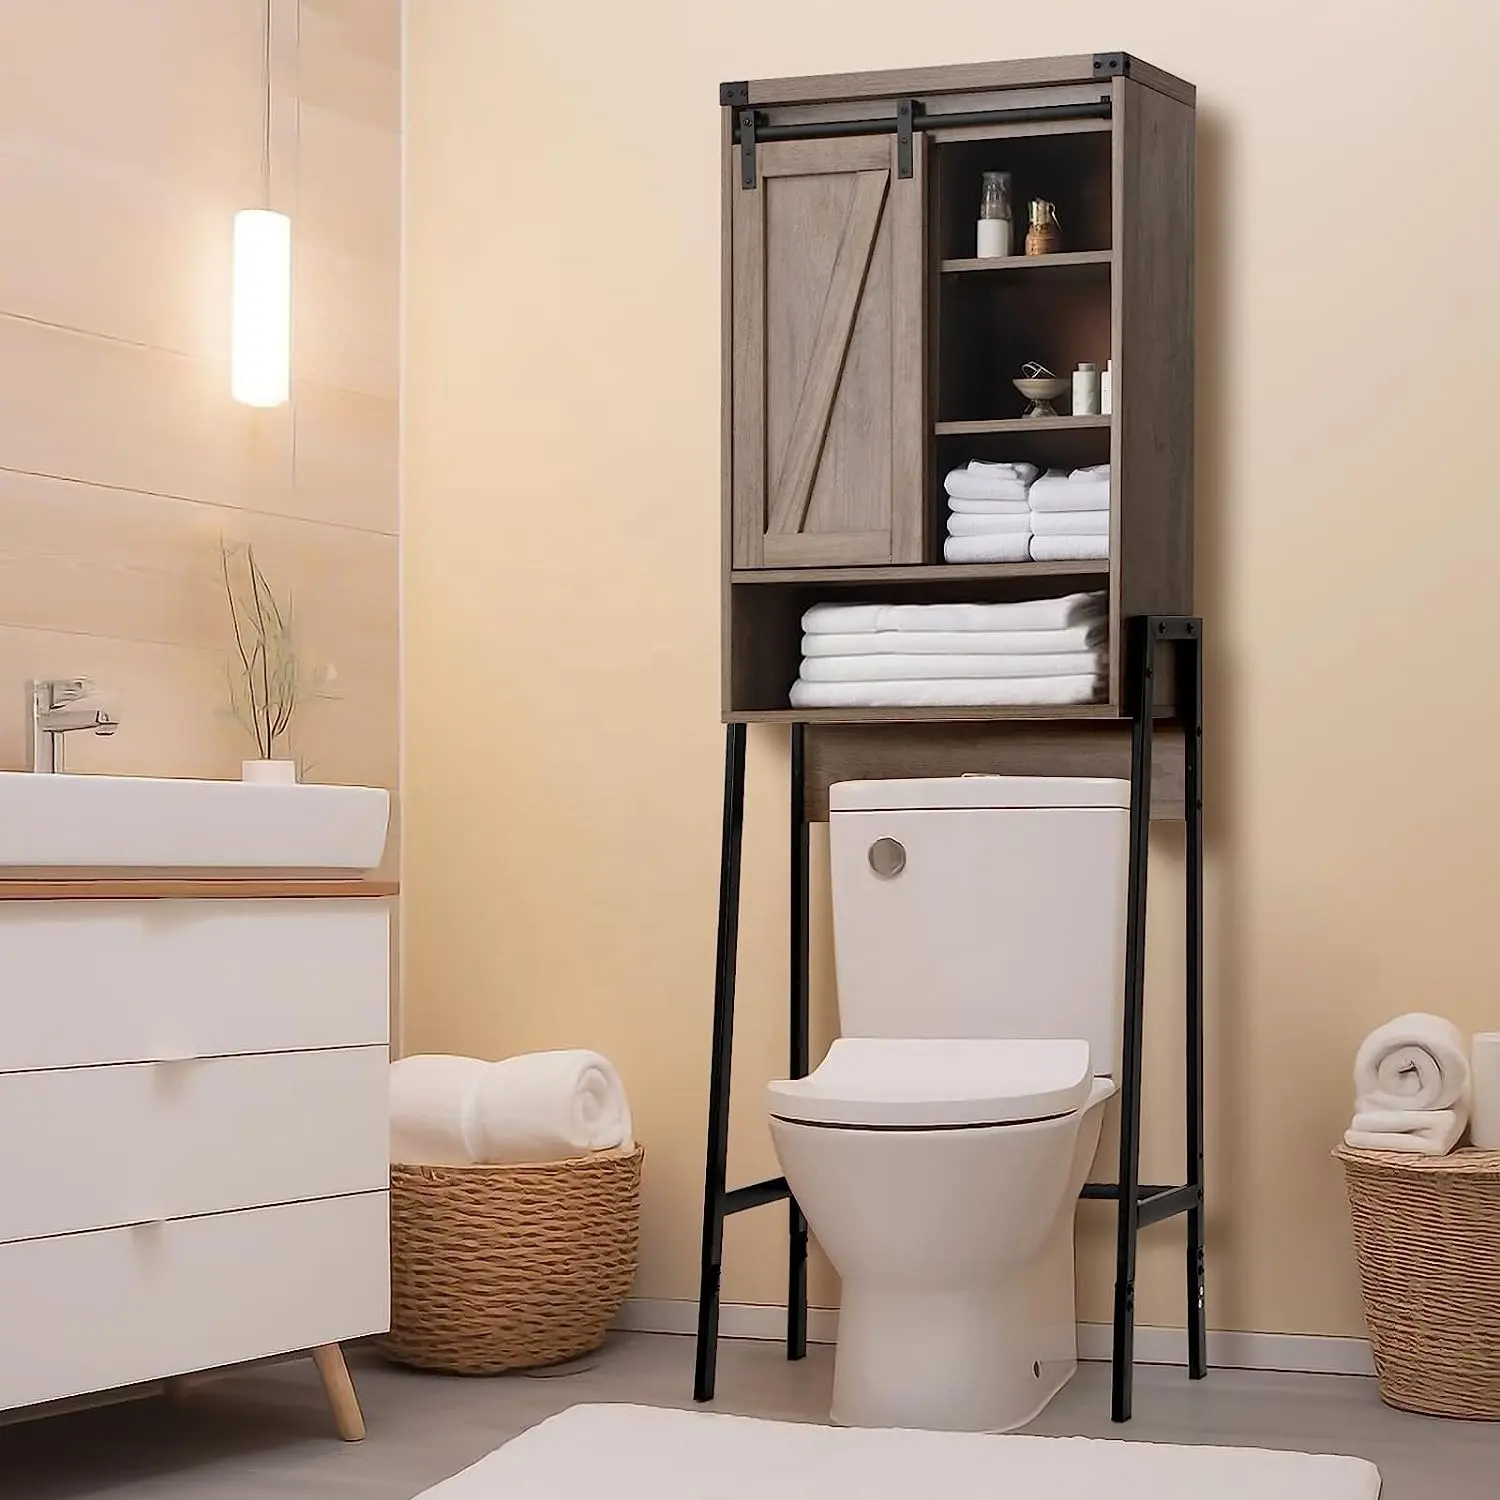 O armário de banheiro cinzento sobre o toalete com armazenamento e ajusta a altura, portas deslizantes com projeto do estilo para o banheiro, balcão